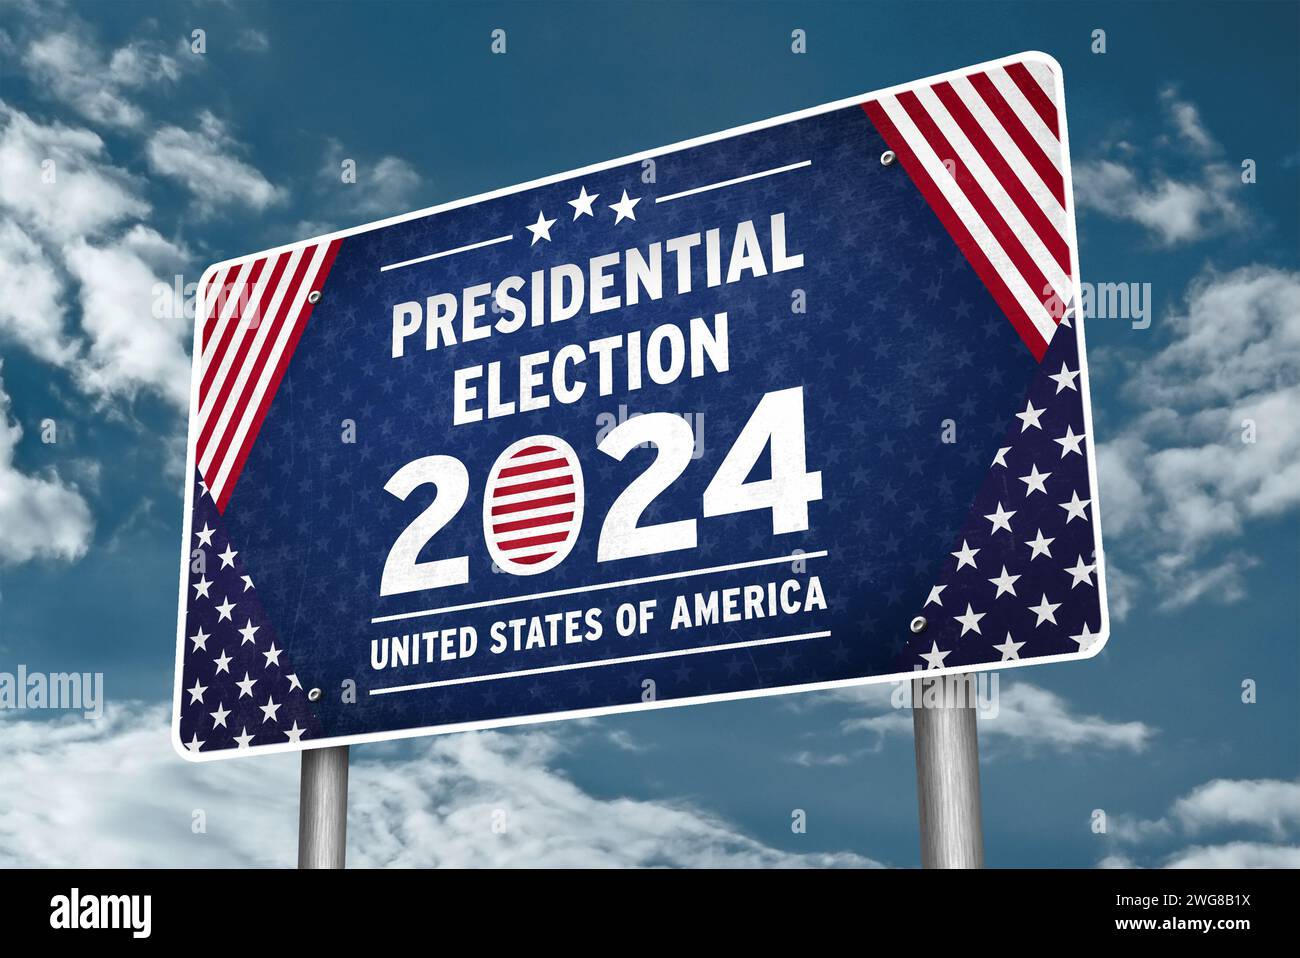 Election présidentielle aux États-Unis d'Amérique en 2024 - information sur la signalisation routière Banque D'Images